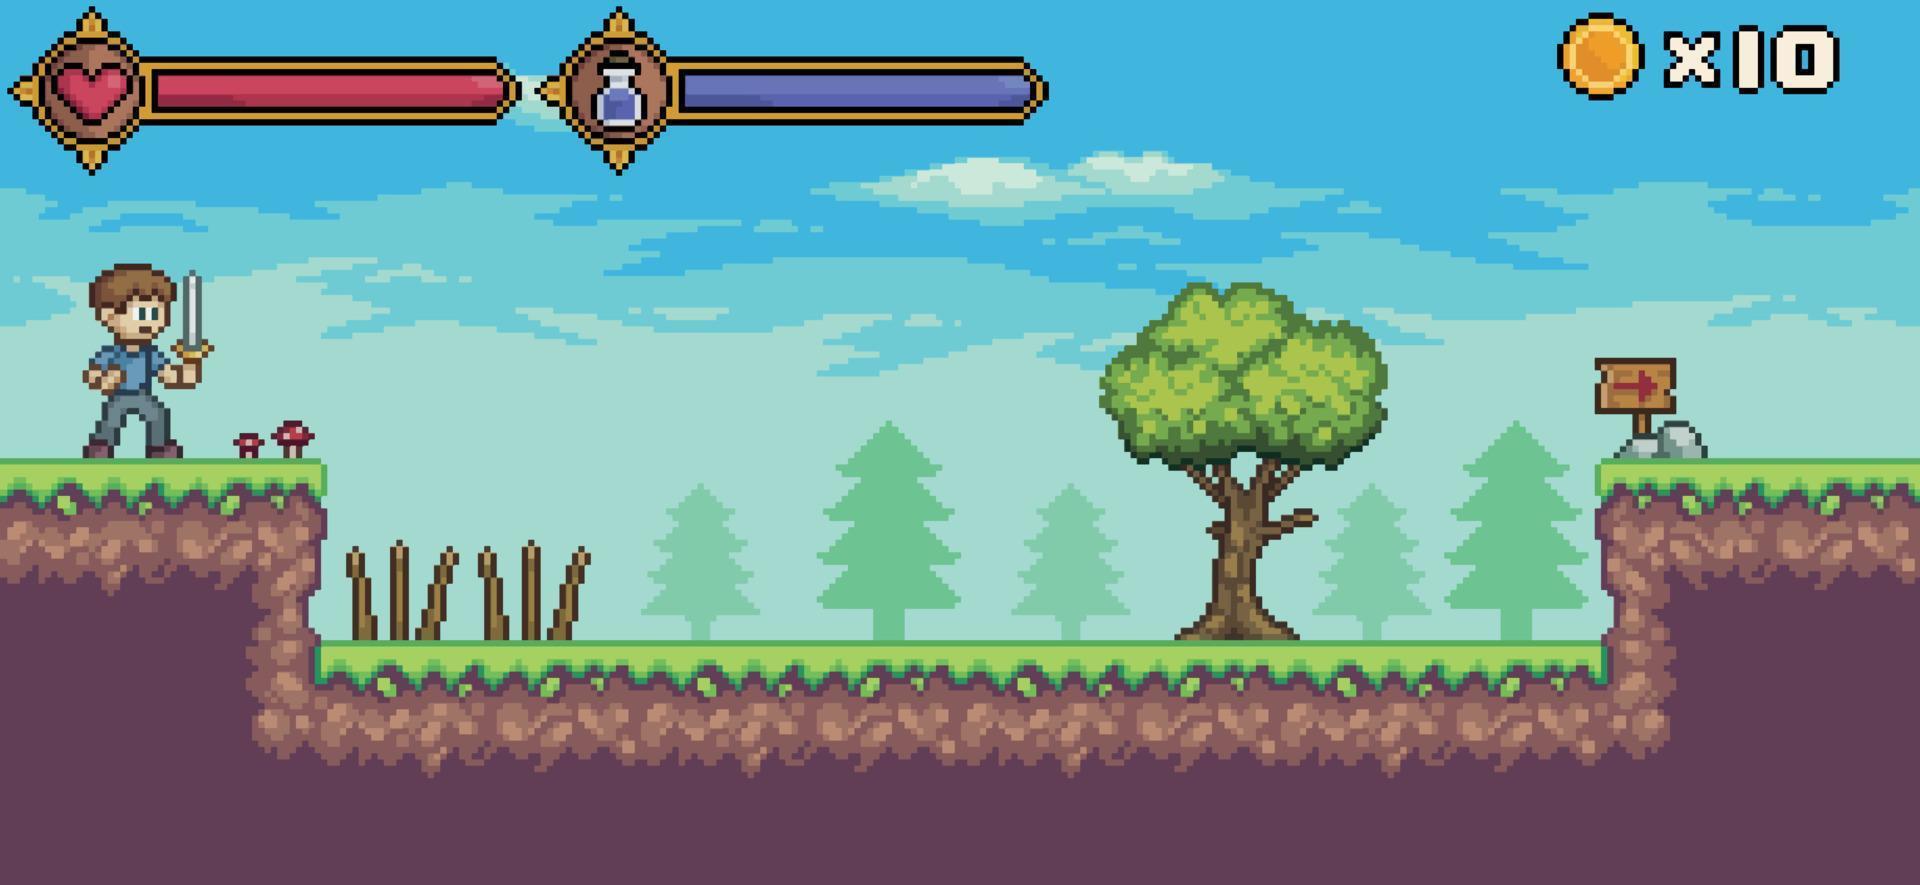 scena di gioco pixel art con personaggio, barra della vita e mana, albero, sfondo vettoriale nuvola per giochi a 8 bit